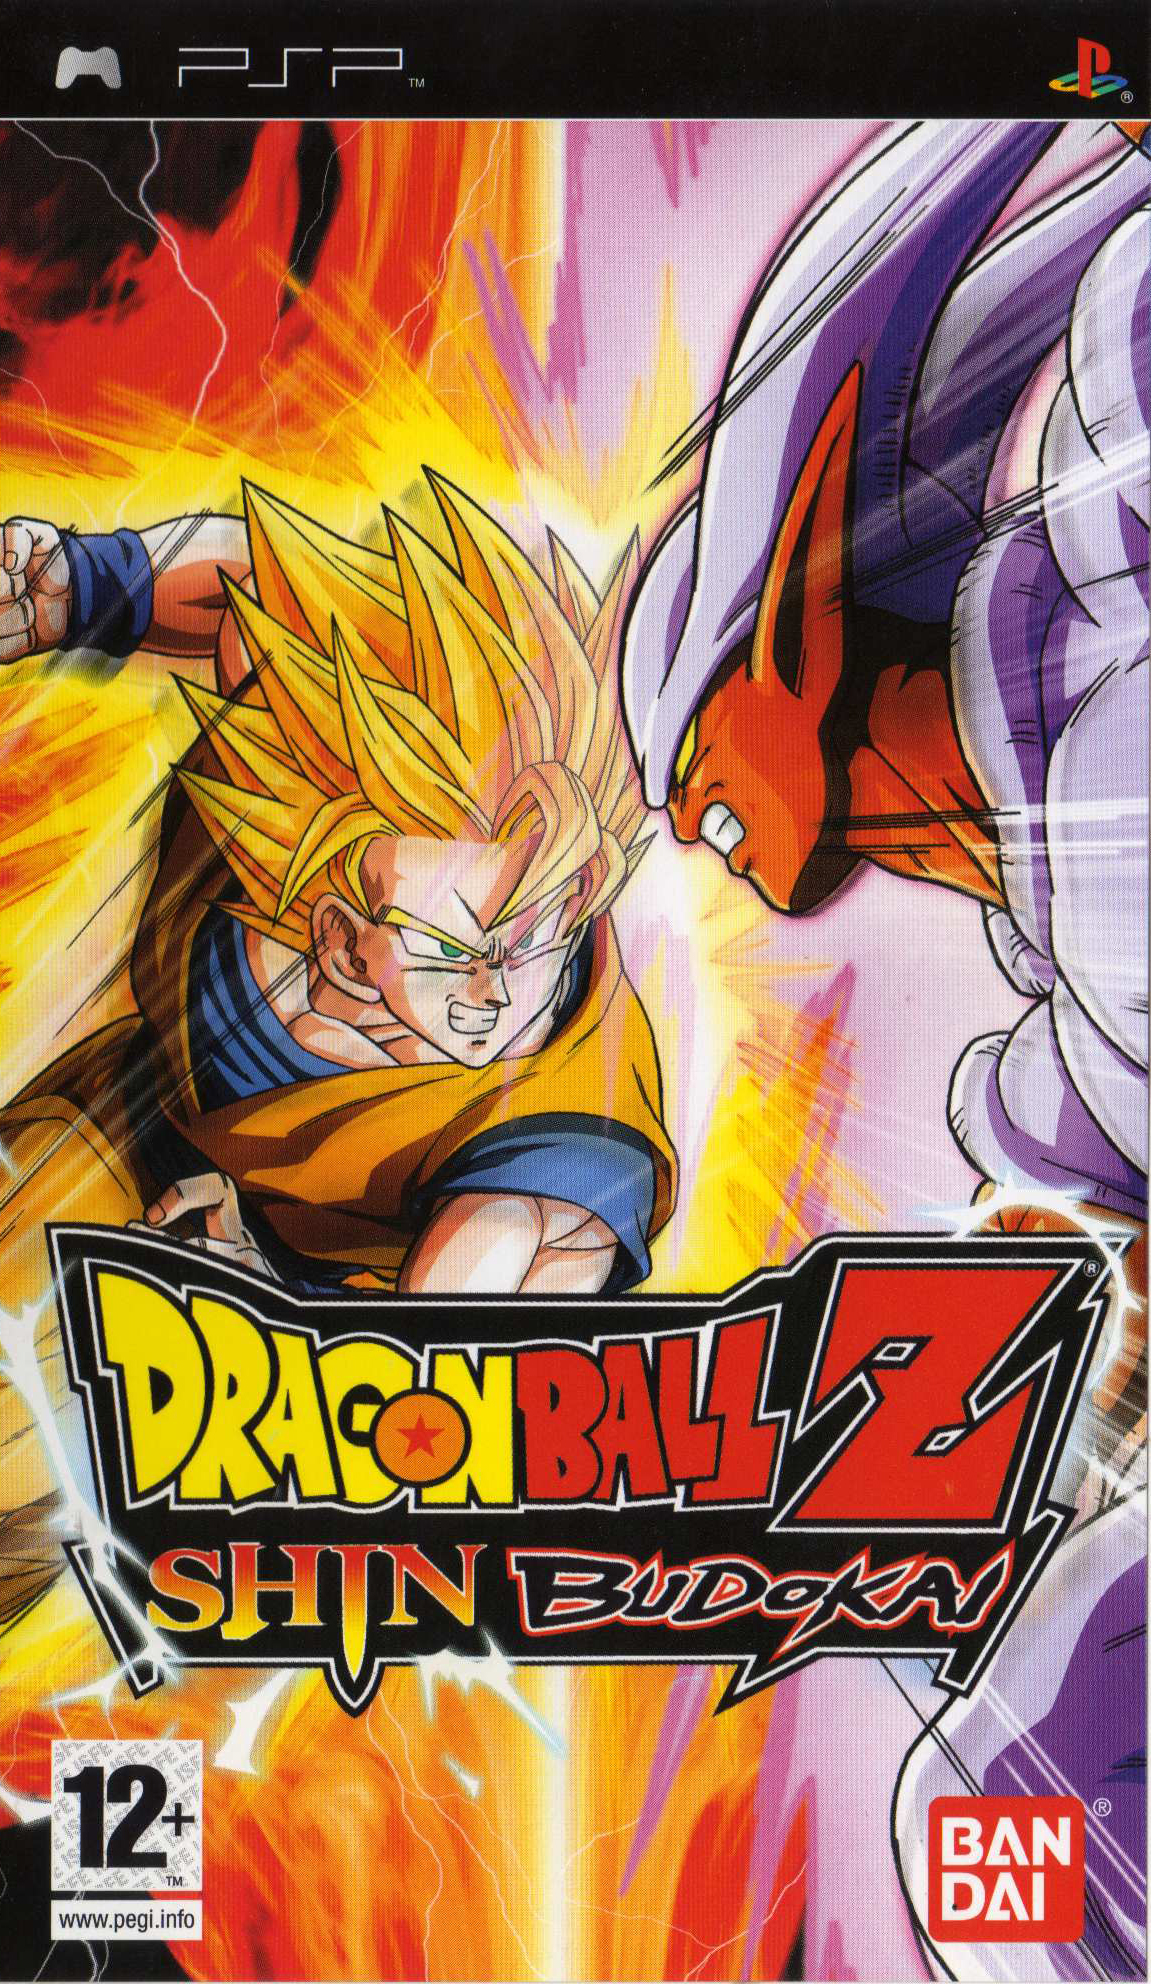 Dragon Ball Z: Shin Budokai | PPSSPP Emulator Wiki | Fandom